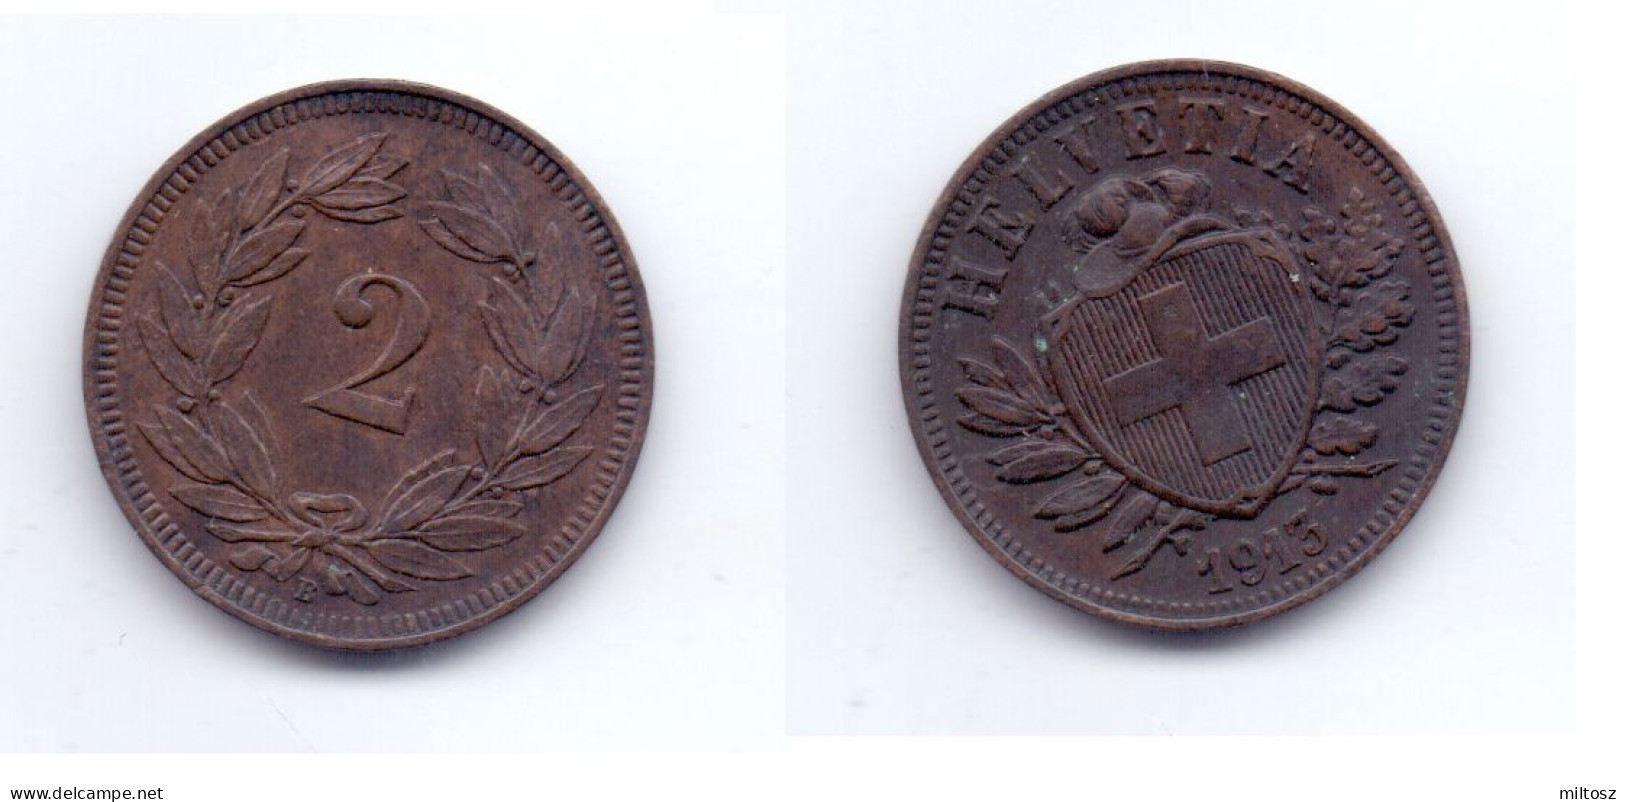 Switzerland 2 Rappen 1913 - 2 Centimes / Rappen